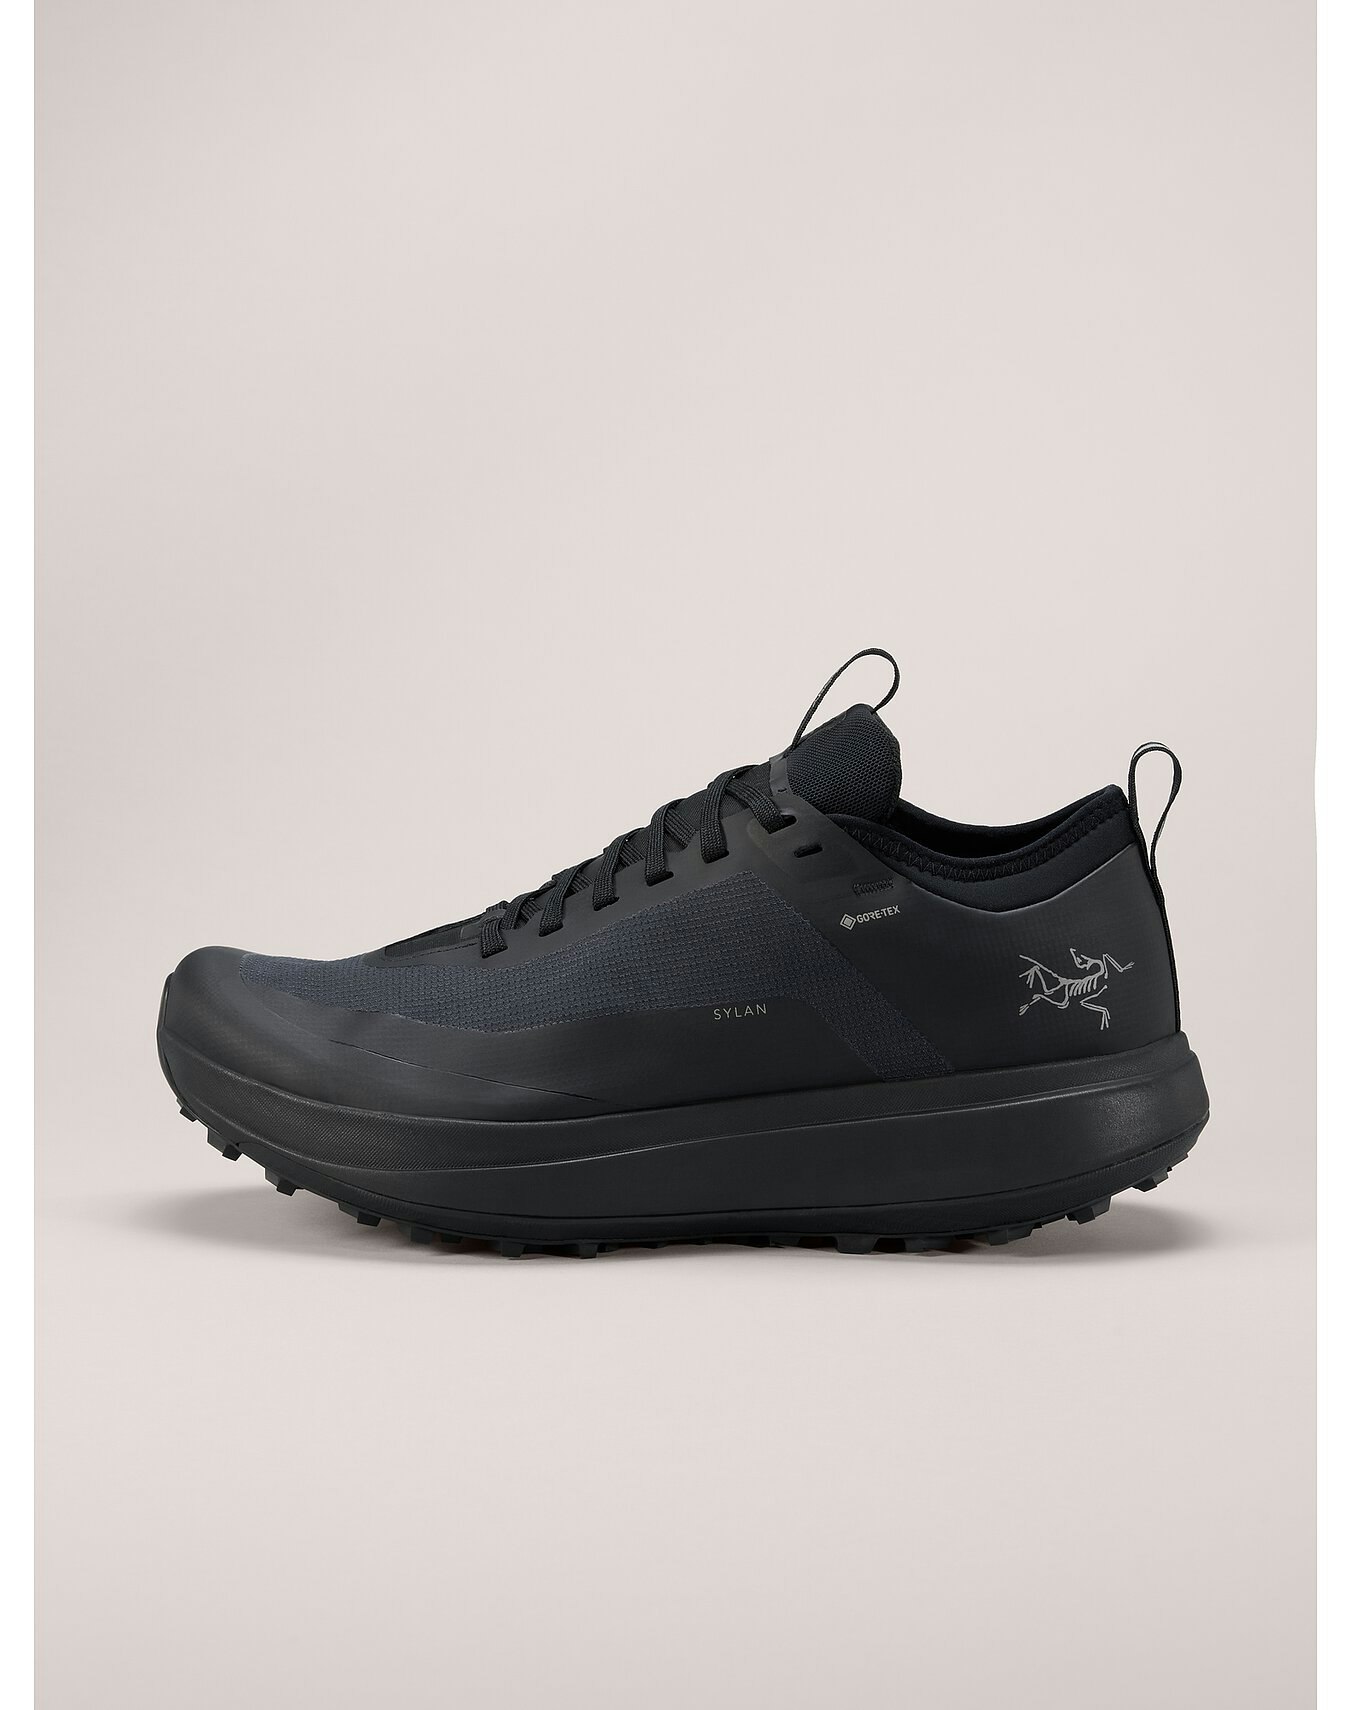 Sylan GTX Shoe Black/Black